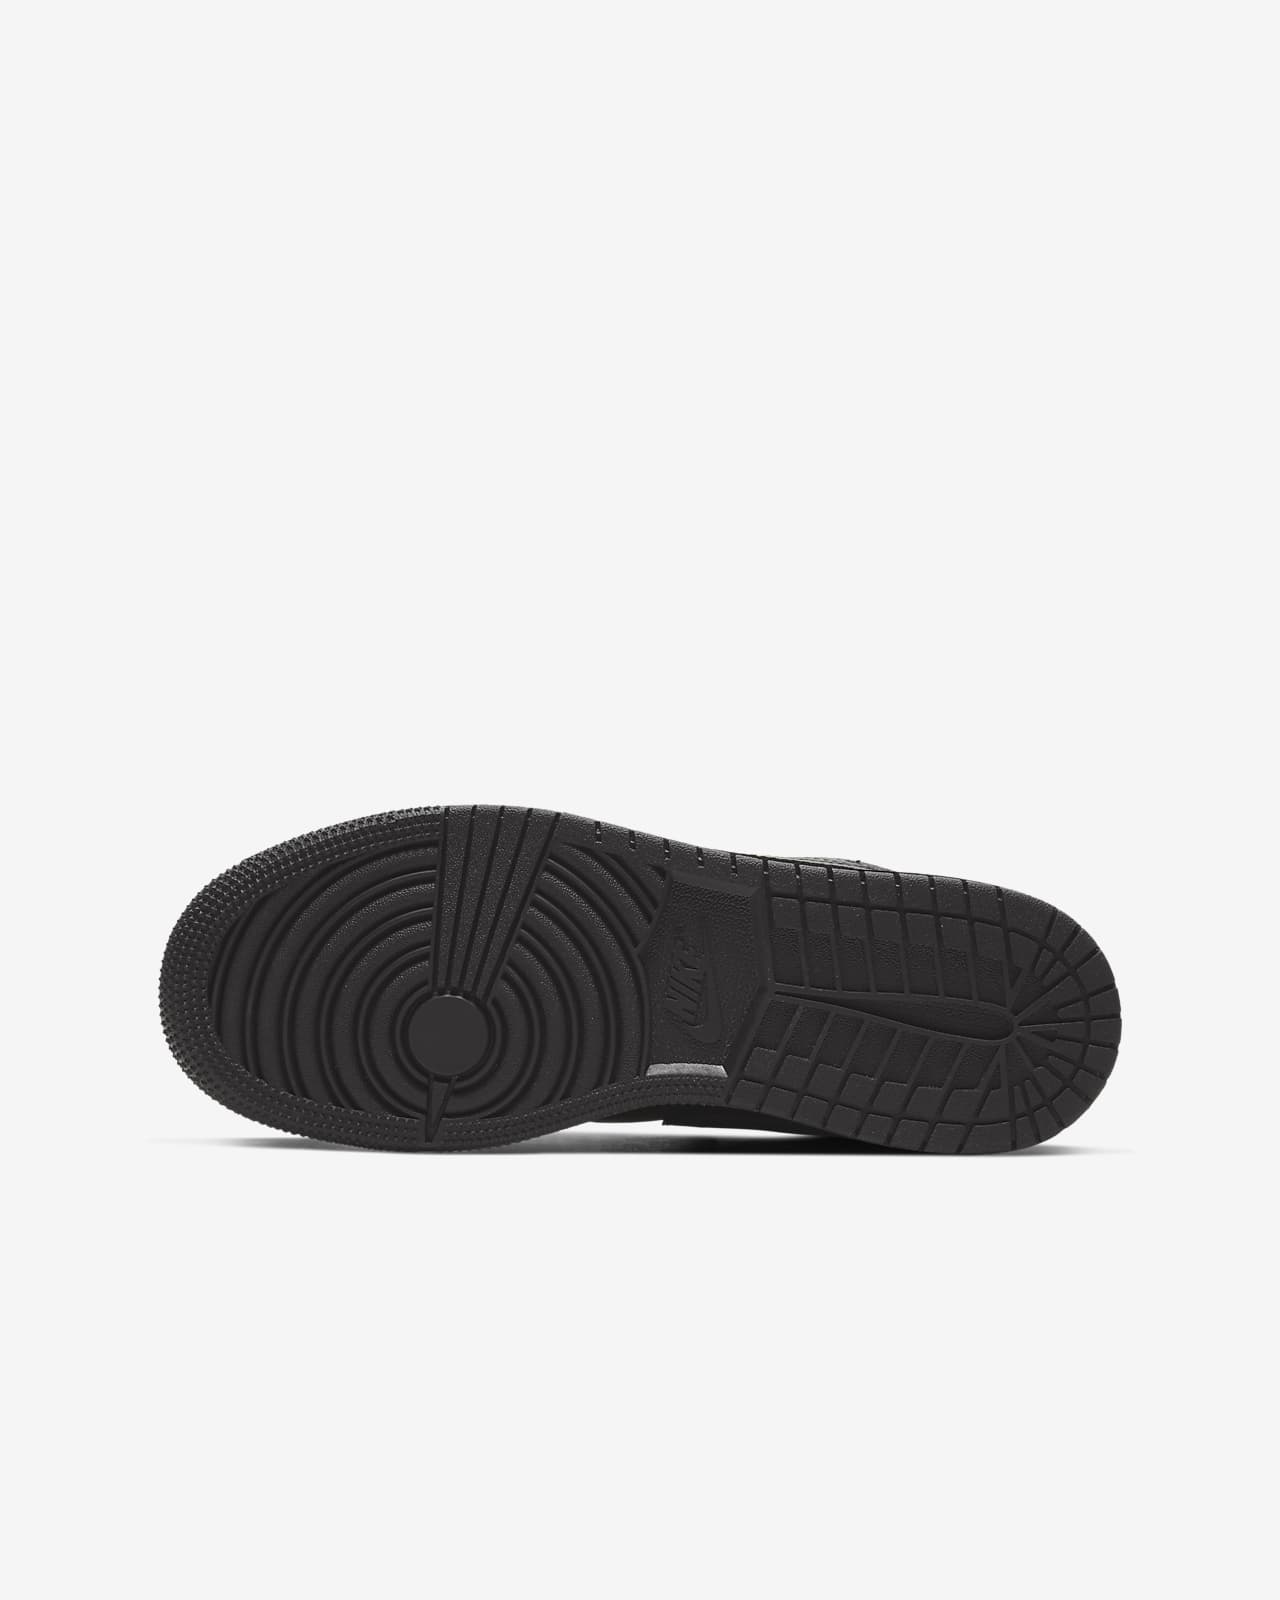 Jordan 1 Low-sko børn. Nike DK